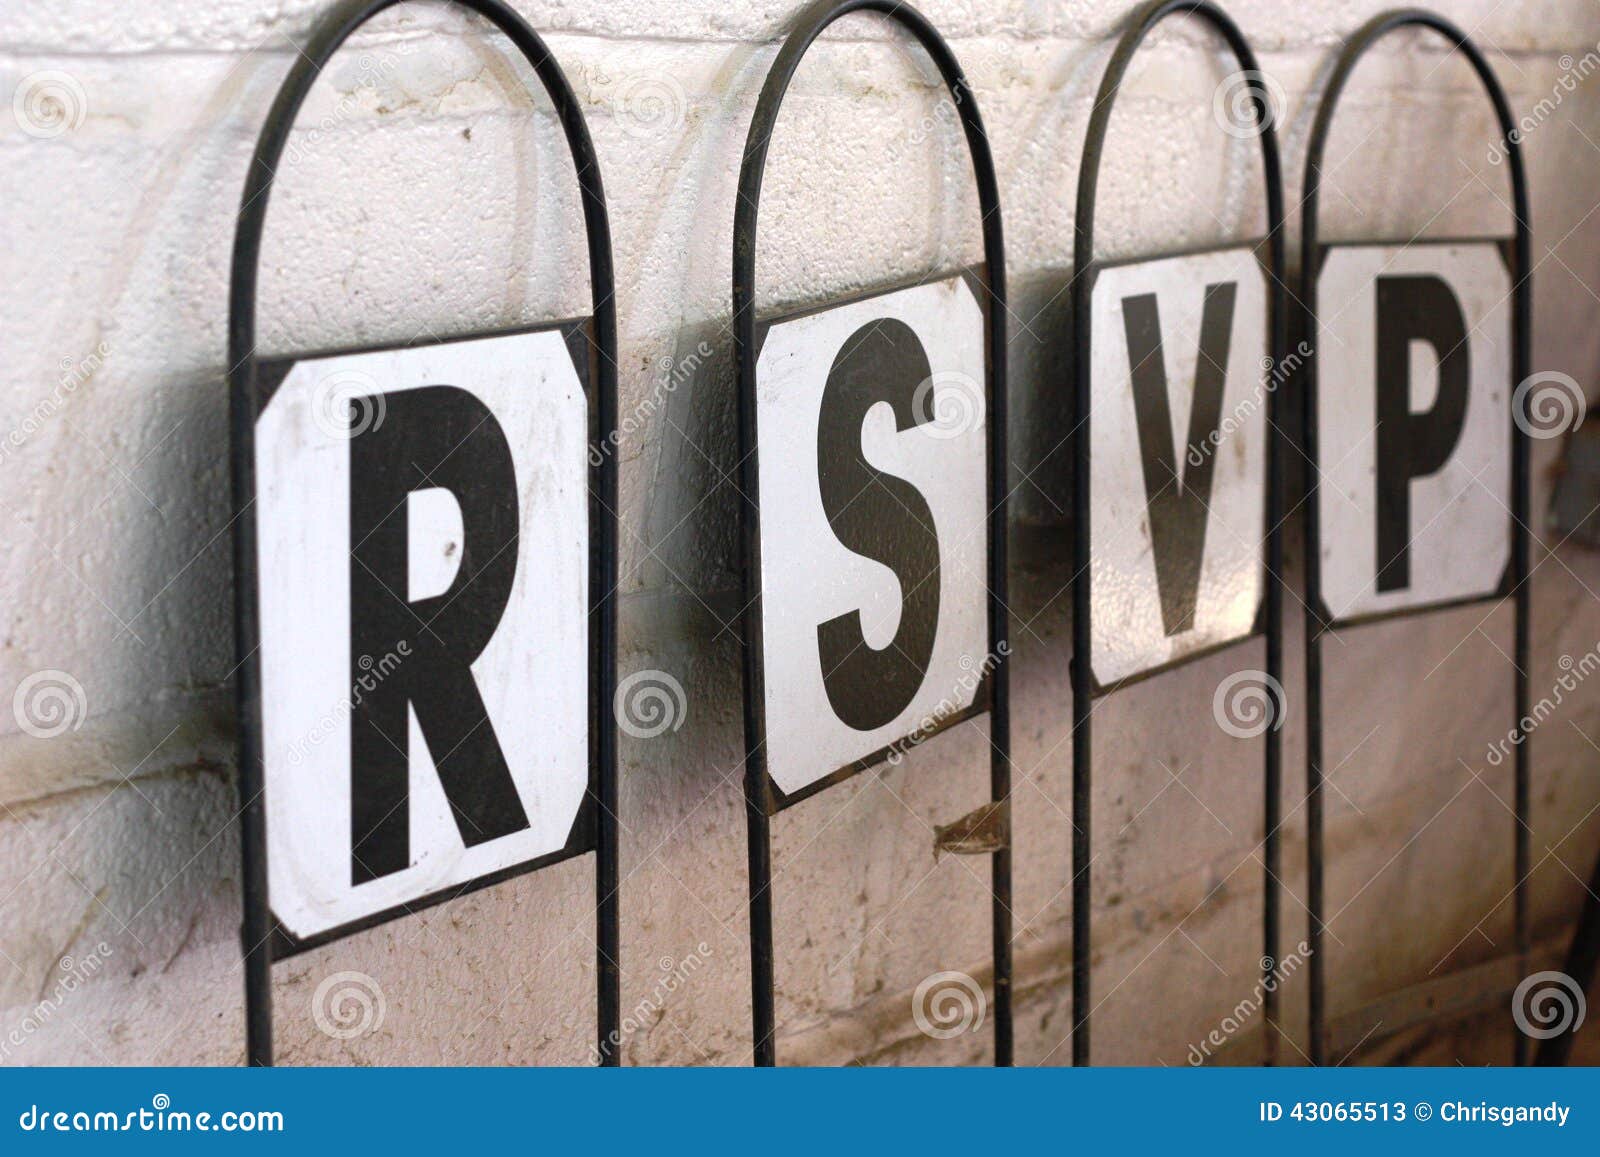 a signpost with letters spelling rsvp respondez s'il vous plait